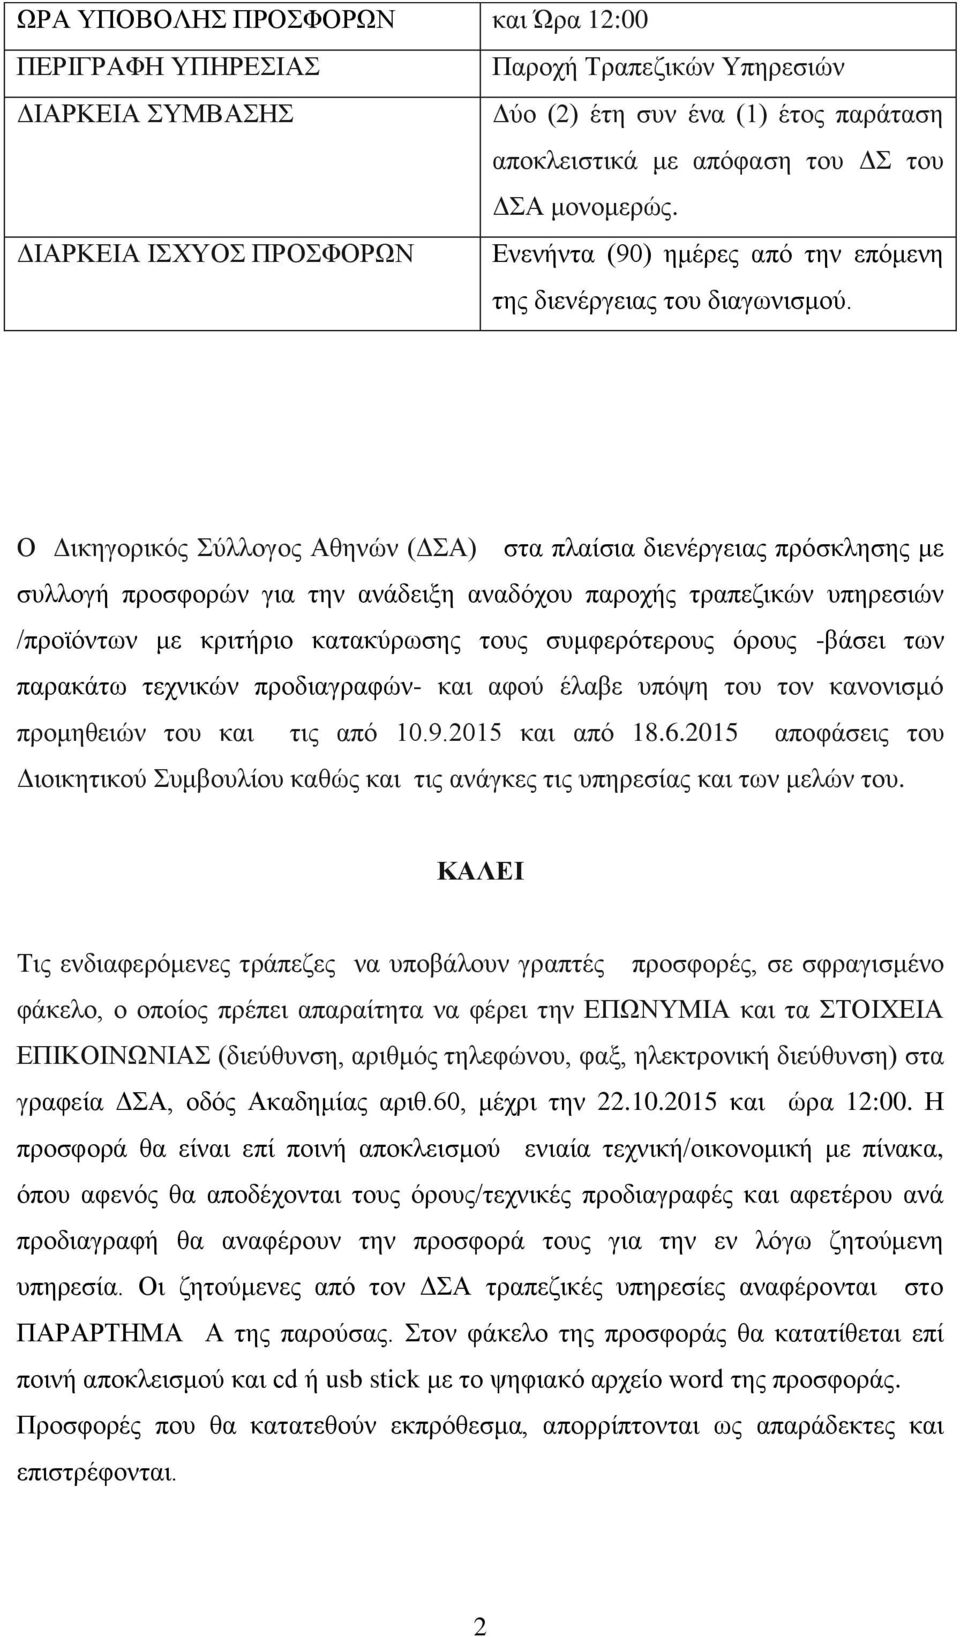 Ο Δικηγορικός Σύλλογος Αθηνών (ΔΣΑ) στα πλαίσια διενέργειας πρόσκλησης με συλλογή προσφορών για την ανάδειξη αναδόχου παροχής τραπεζικών υπηρεσιών /προϊόντων με κριτήριο κατακύρωσης τους